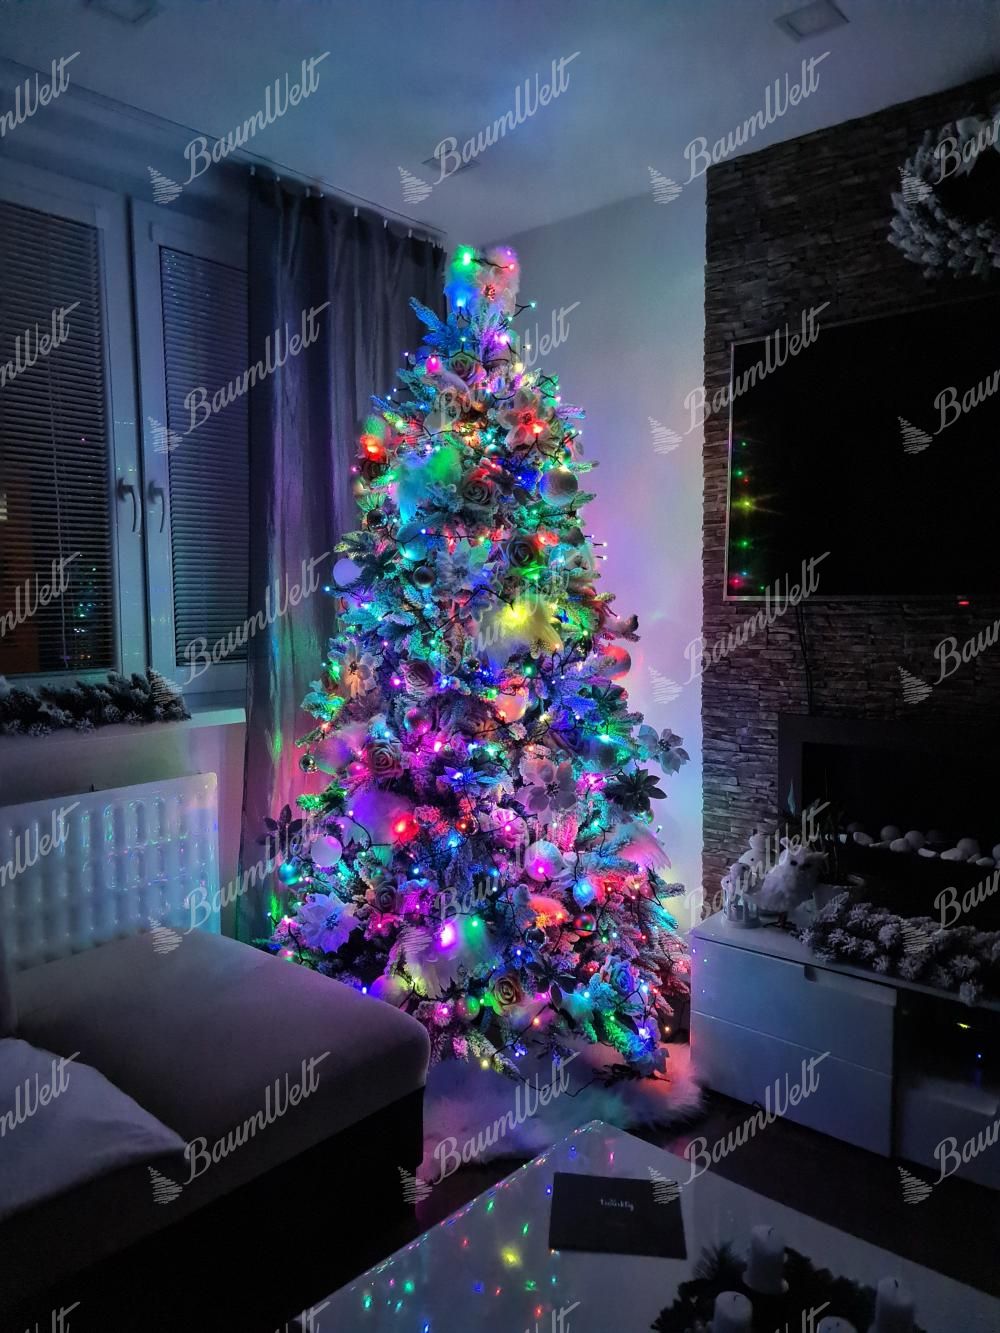 Multi-farbige animierte LED-Weihnachtsbaum-Lichtshow - 1+1 GRATIS! – Veomax